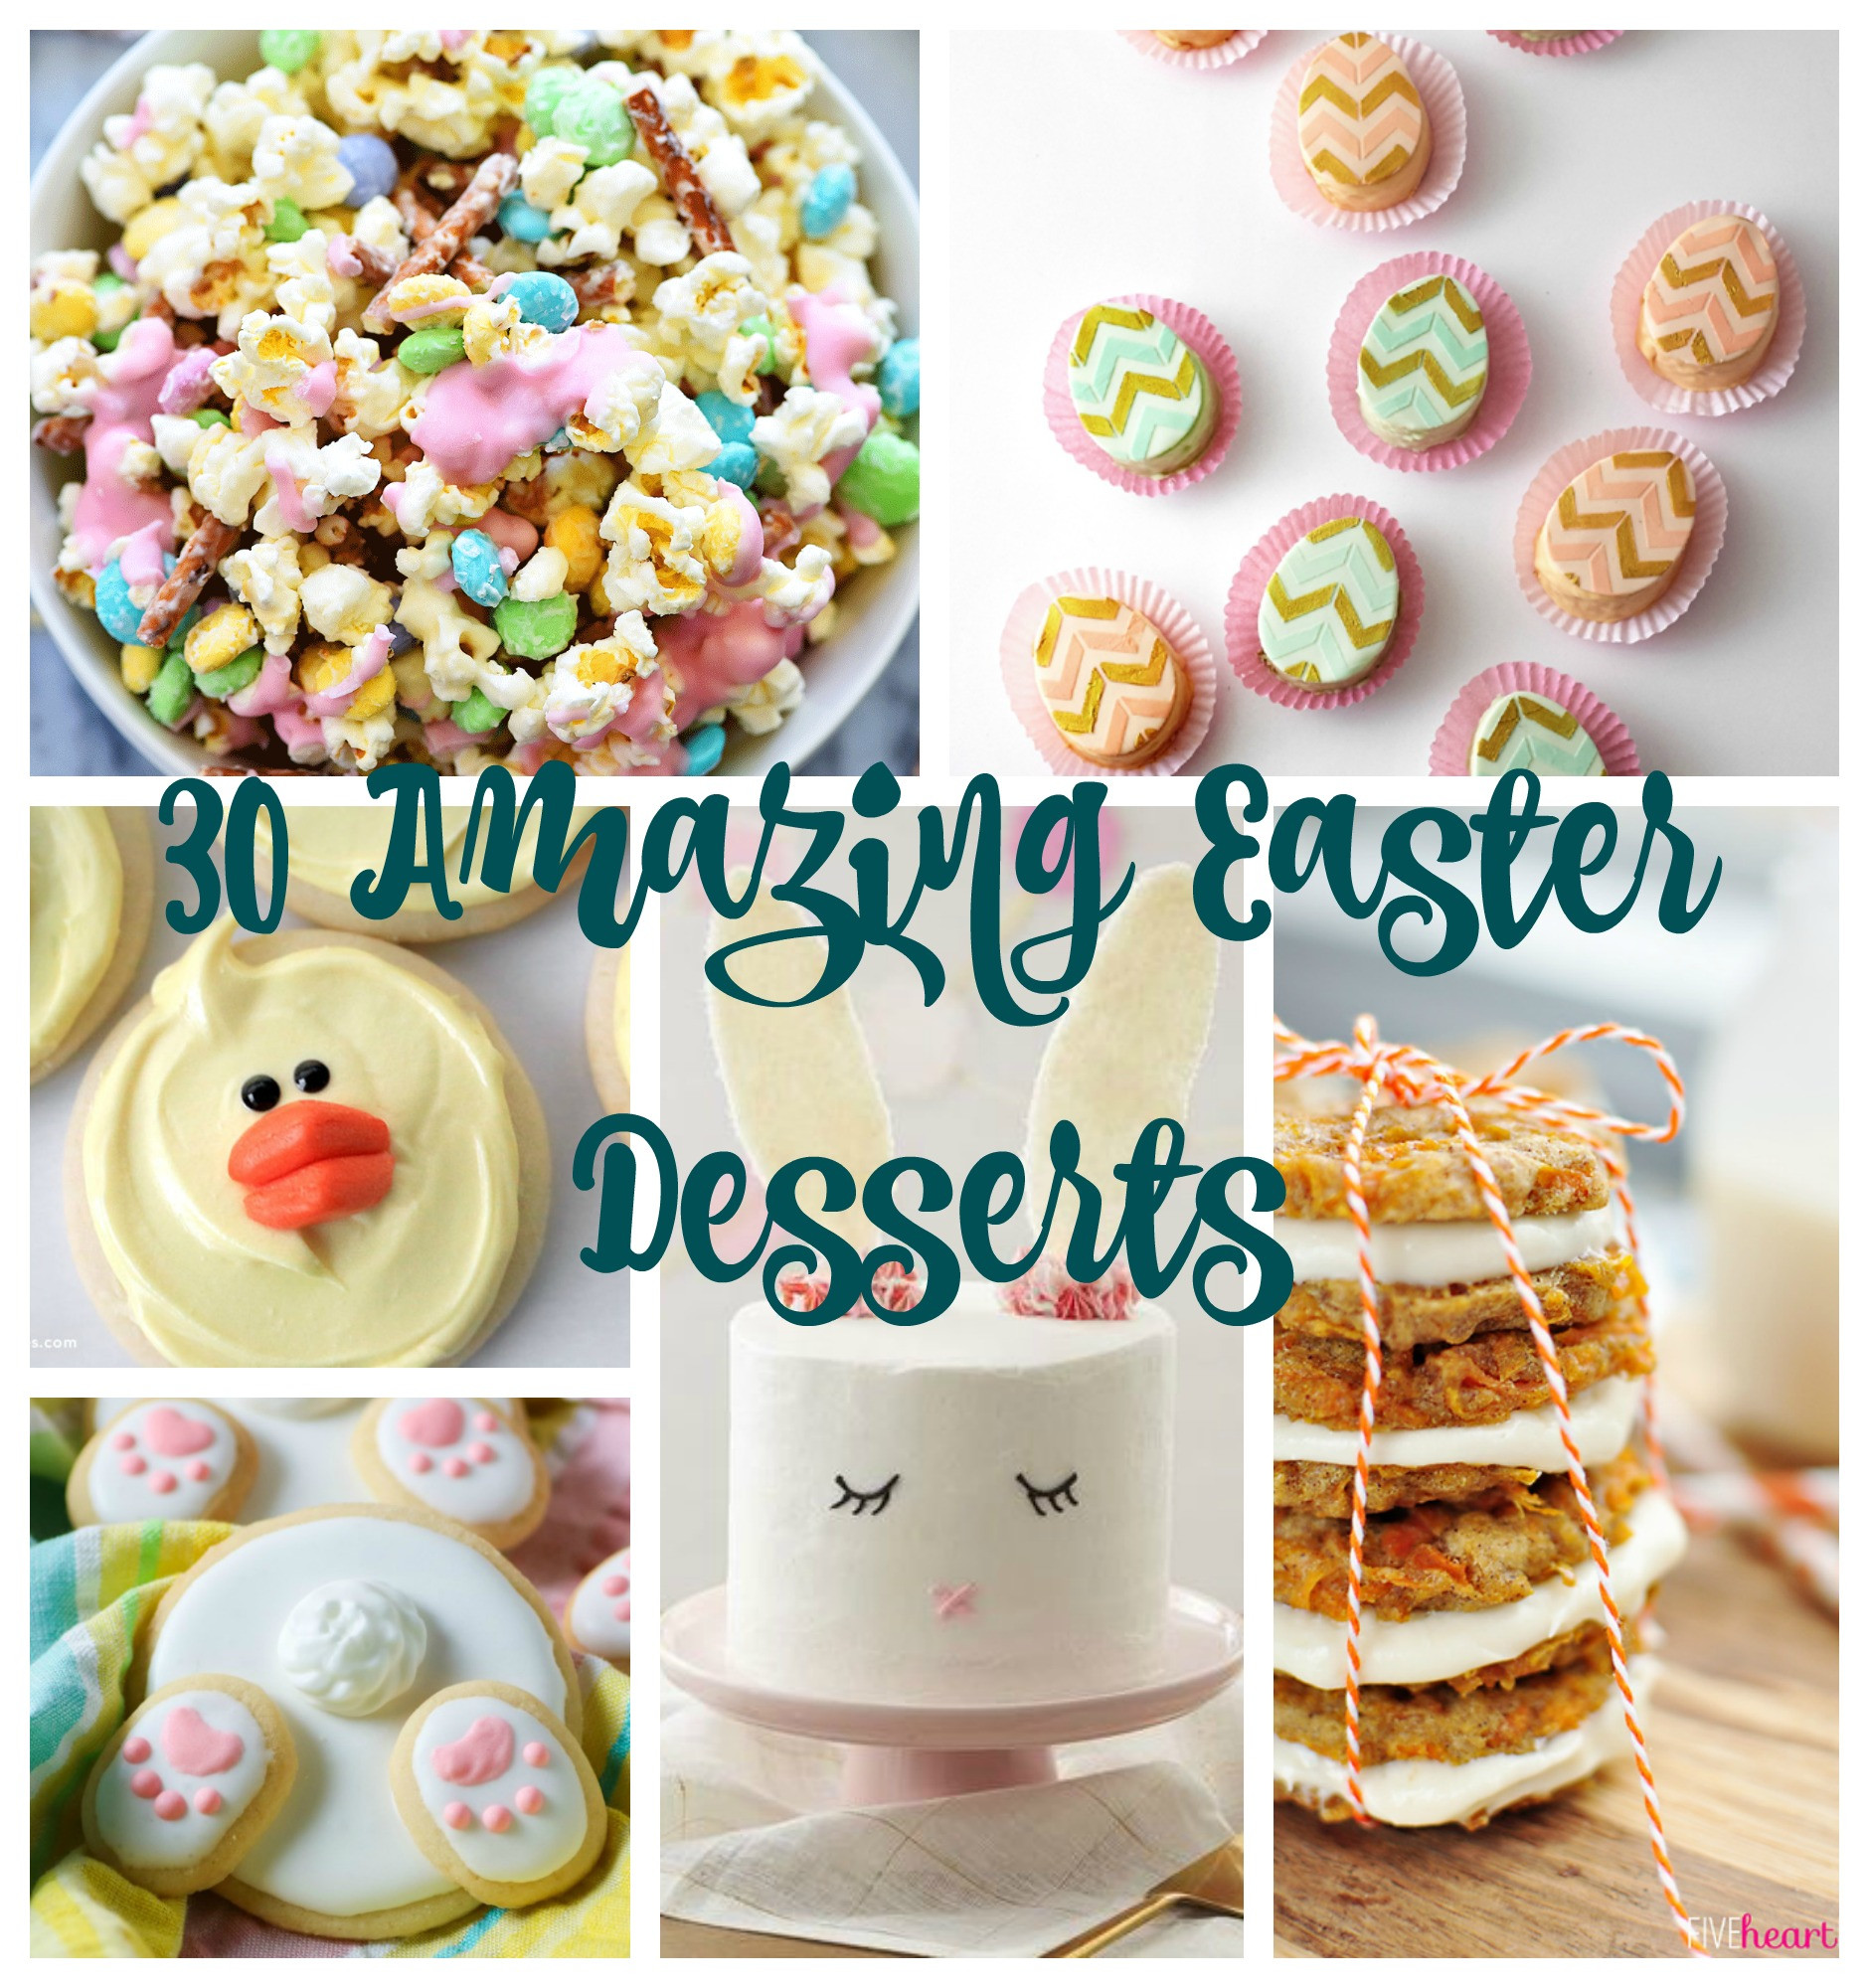 Pinterest Easter Desserts
 30 Amazing Easter Desserts I Dig Pinterest